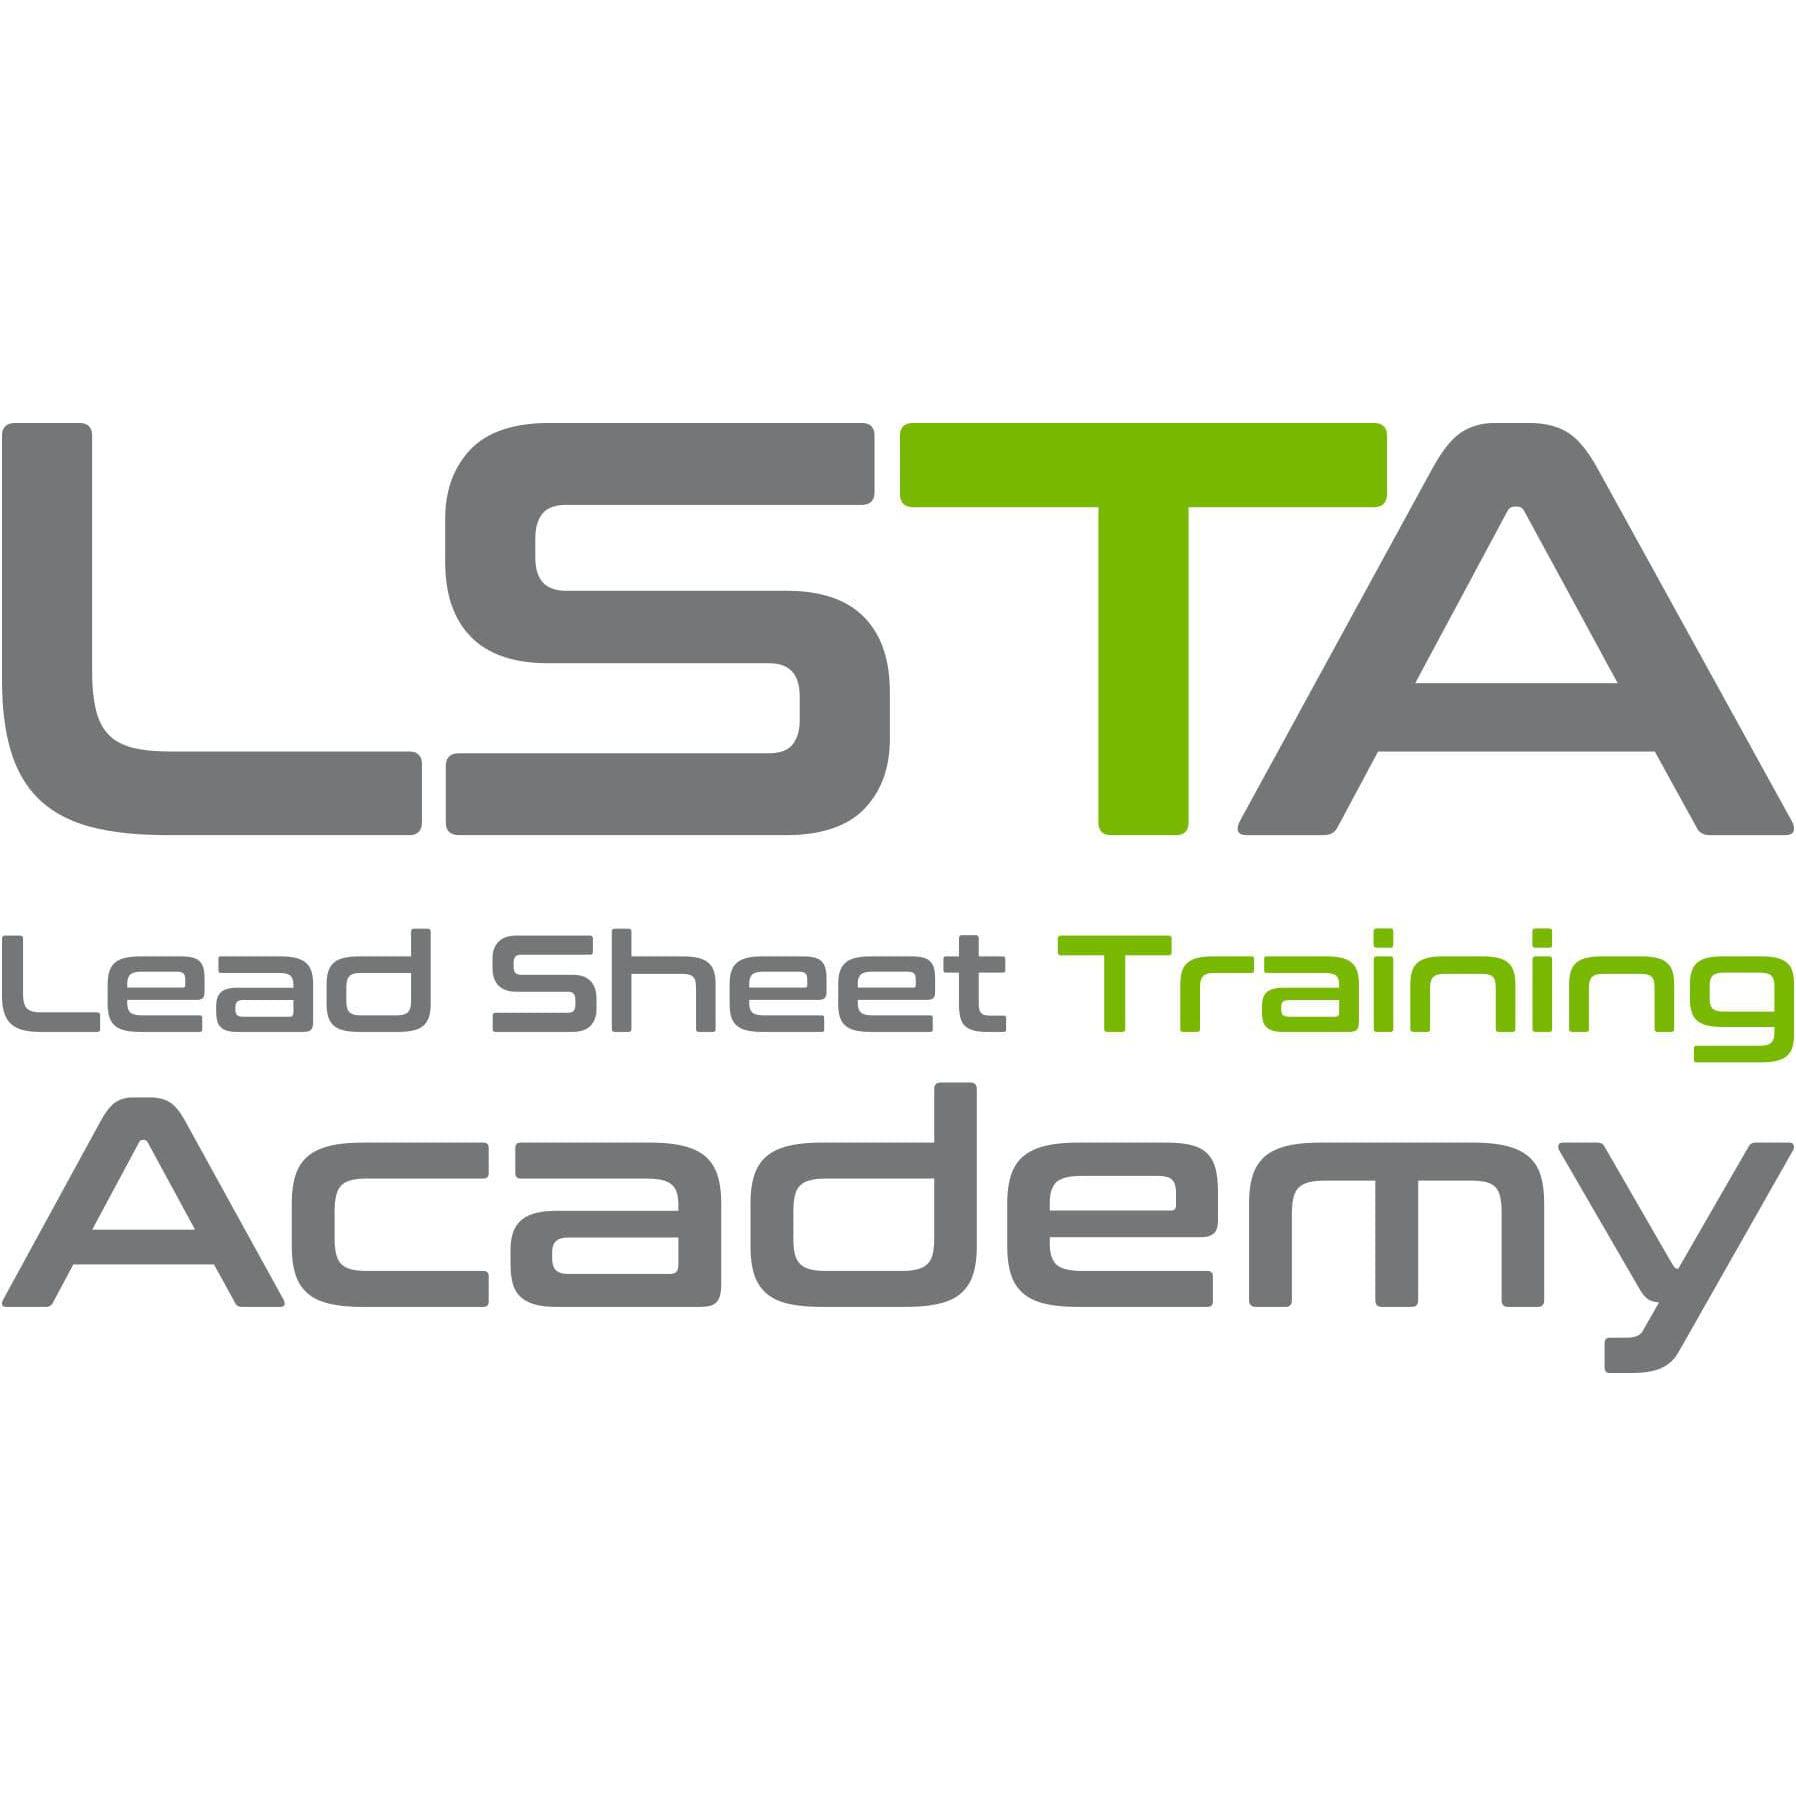 Lead Sheet Training Academy Ltd Logo